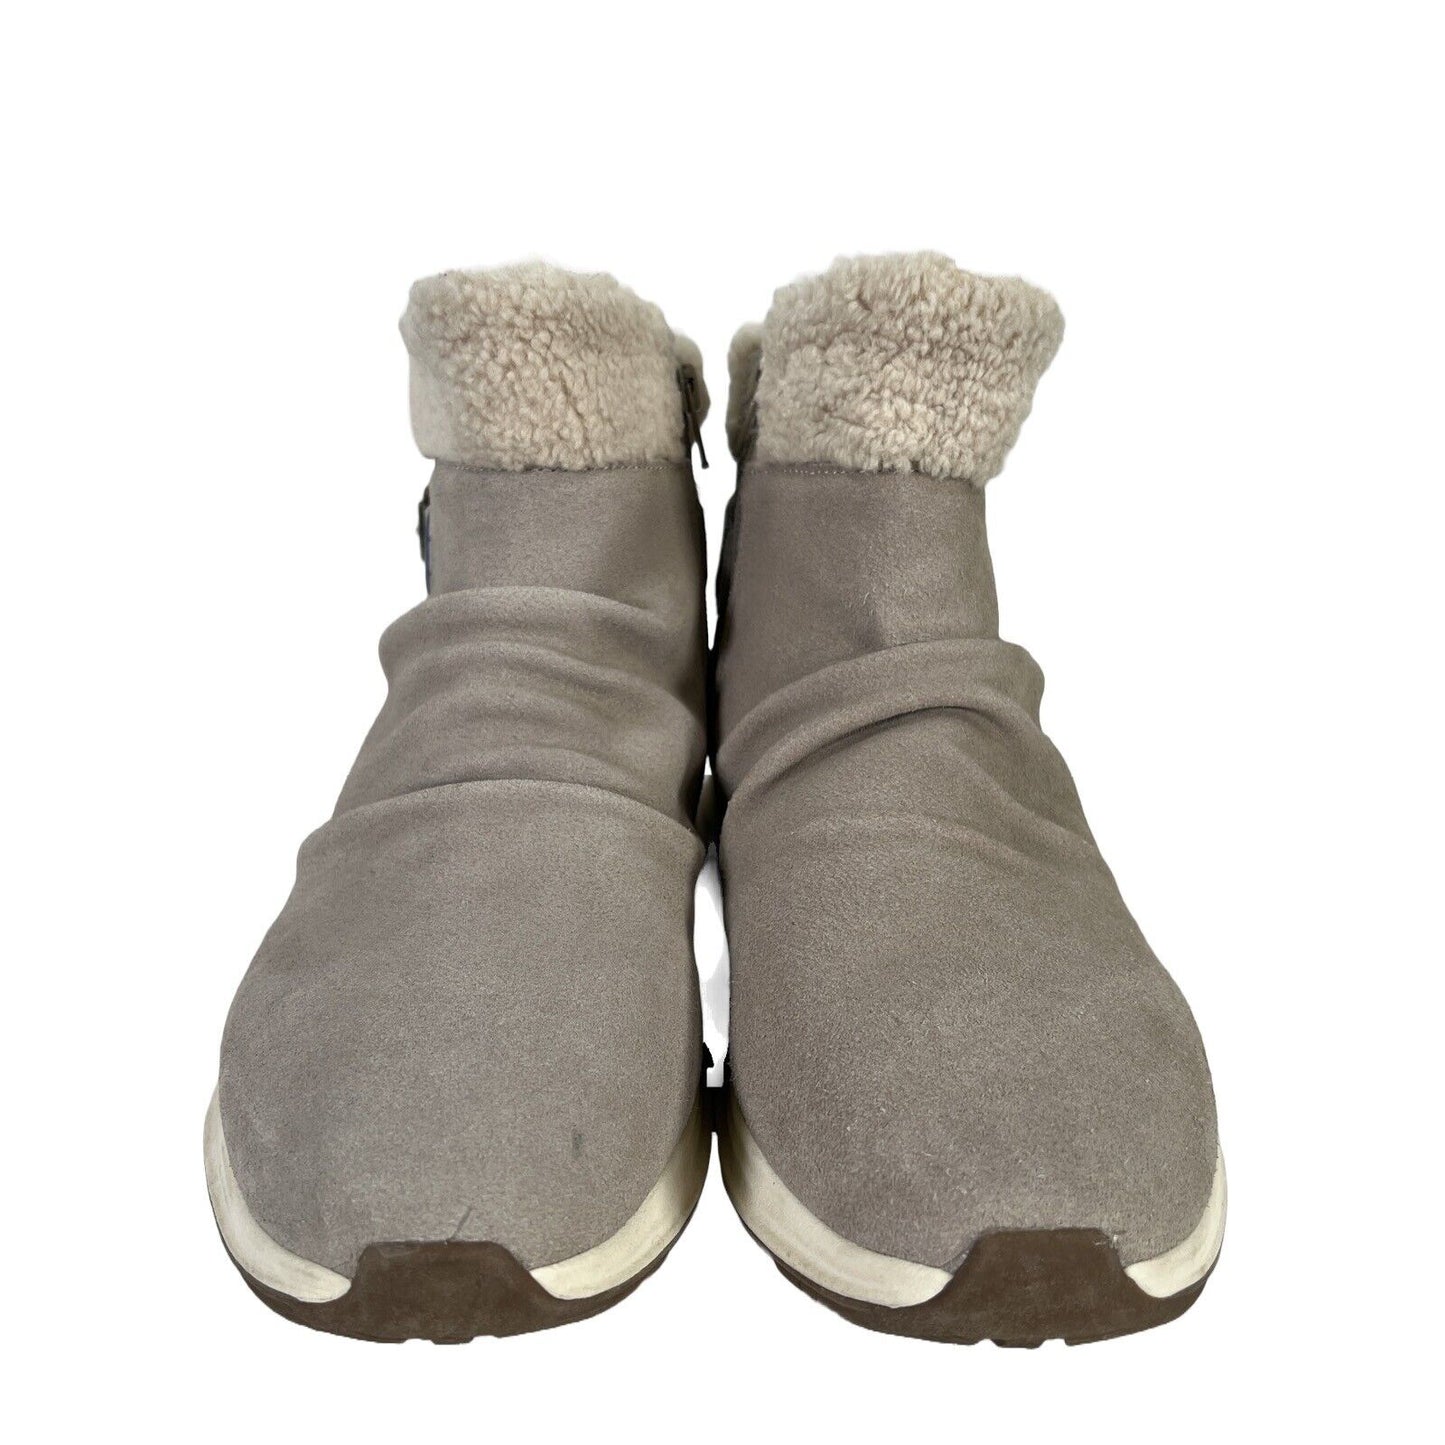 Baretraps Women's Beige Suede Becki Fleece Lined Boots - 10 M